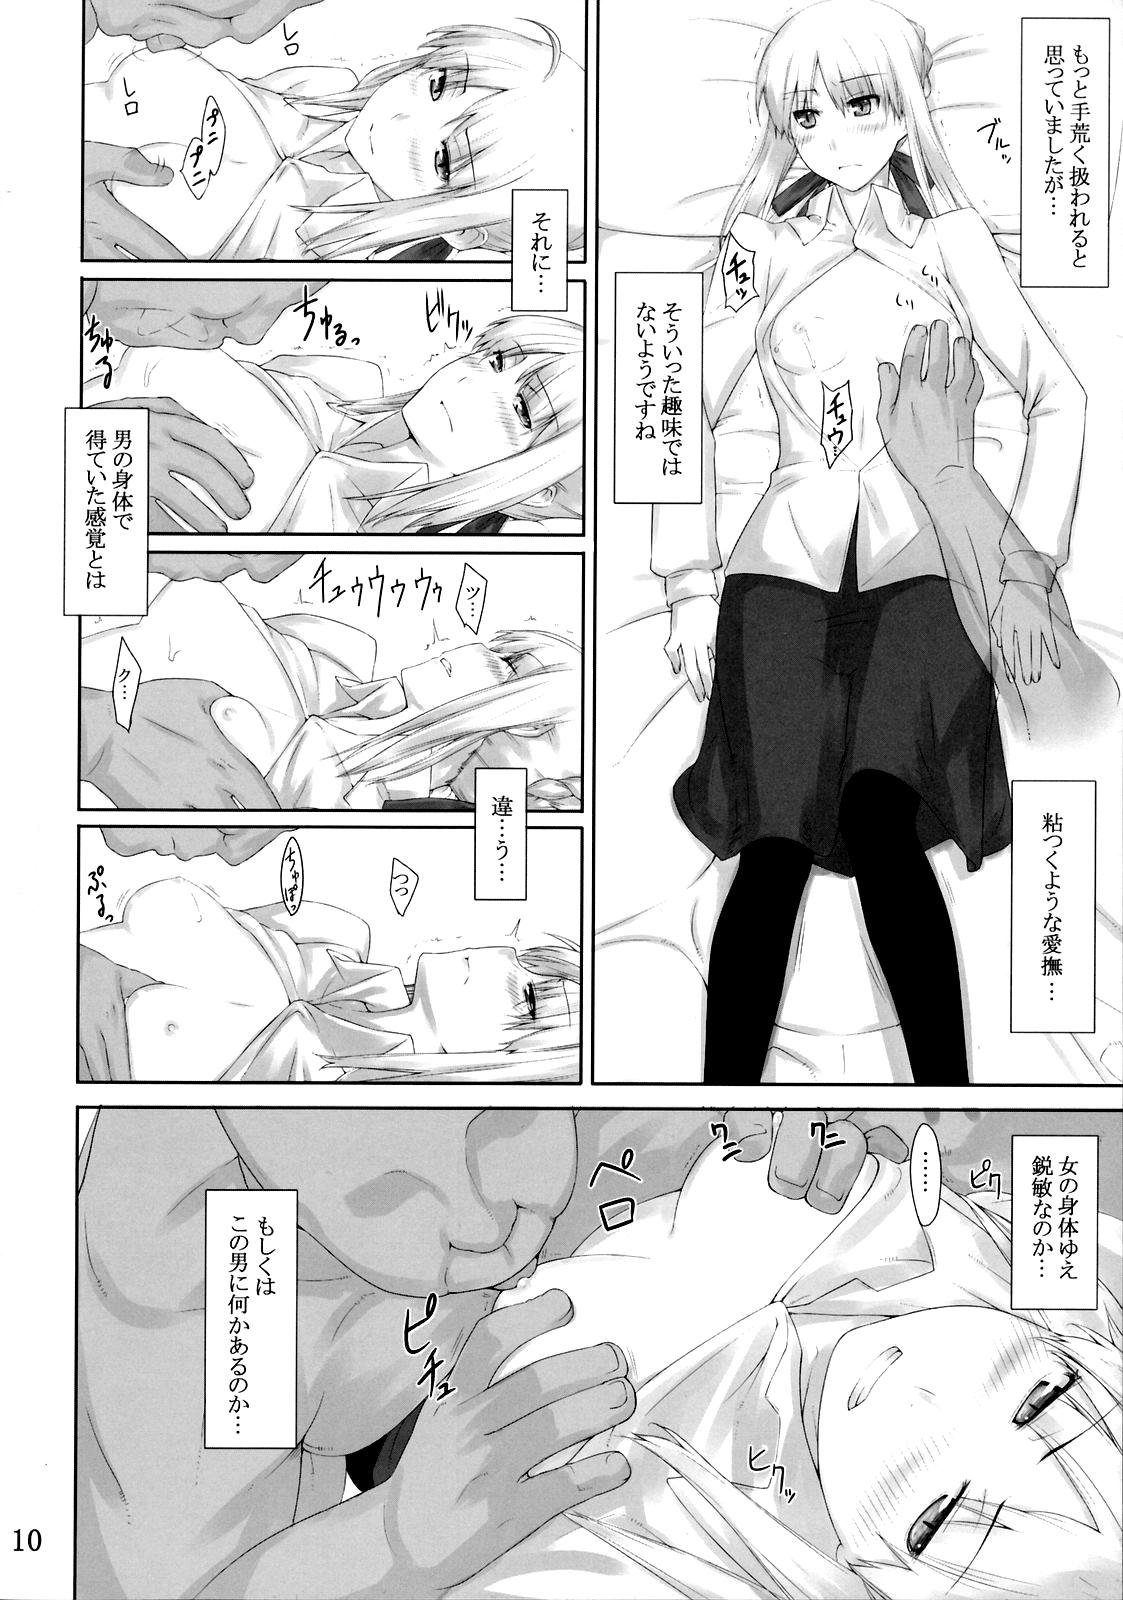 Eat Tohsaka-ke no Kakei Jijou 3 - Fate stay night Teenies - Page 9